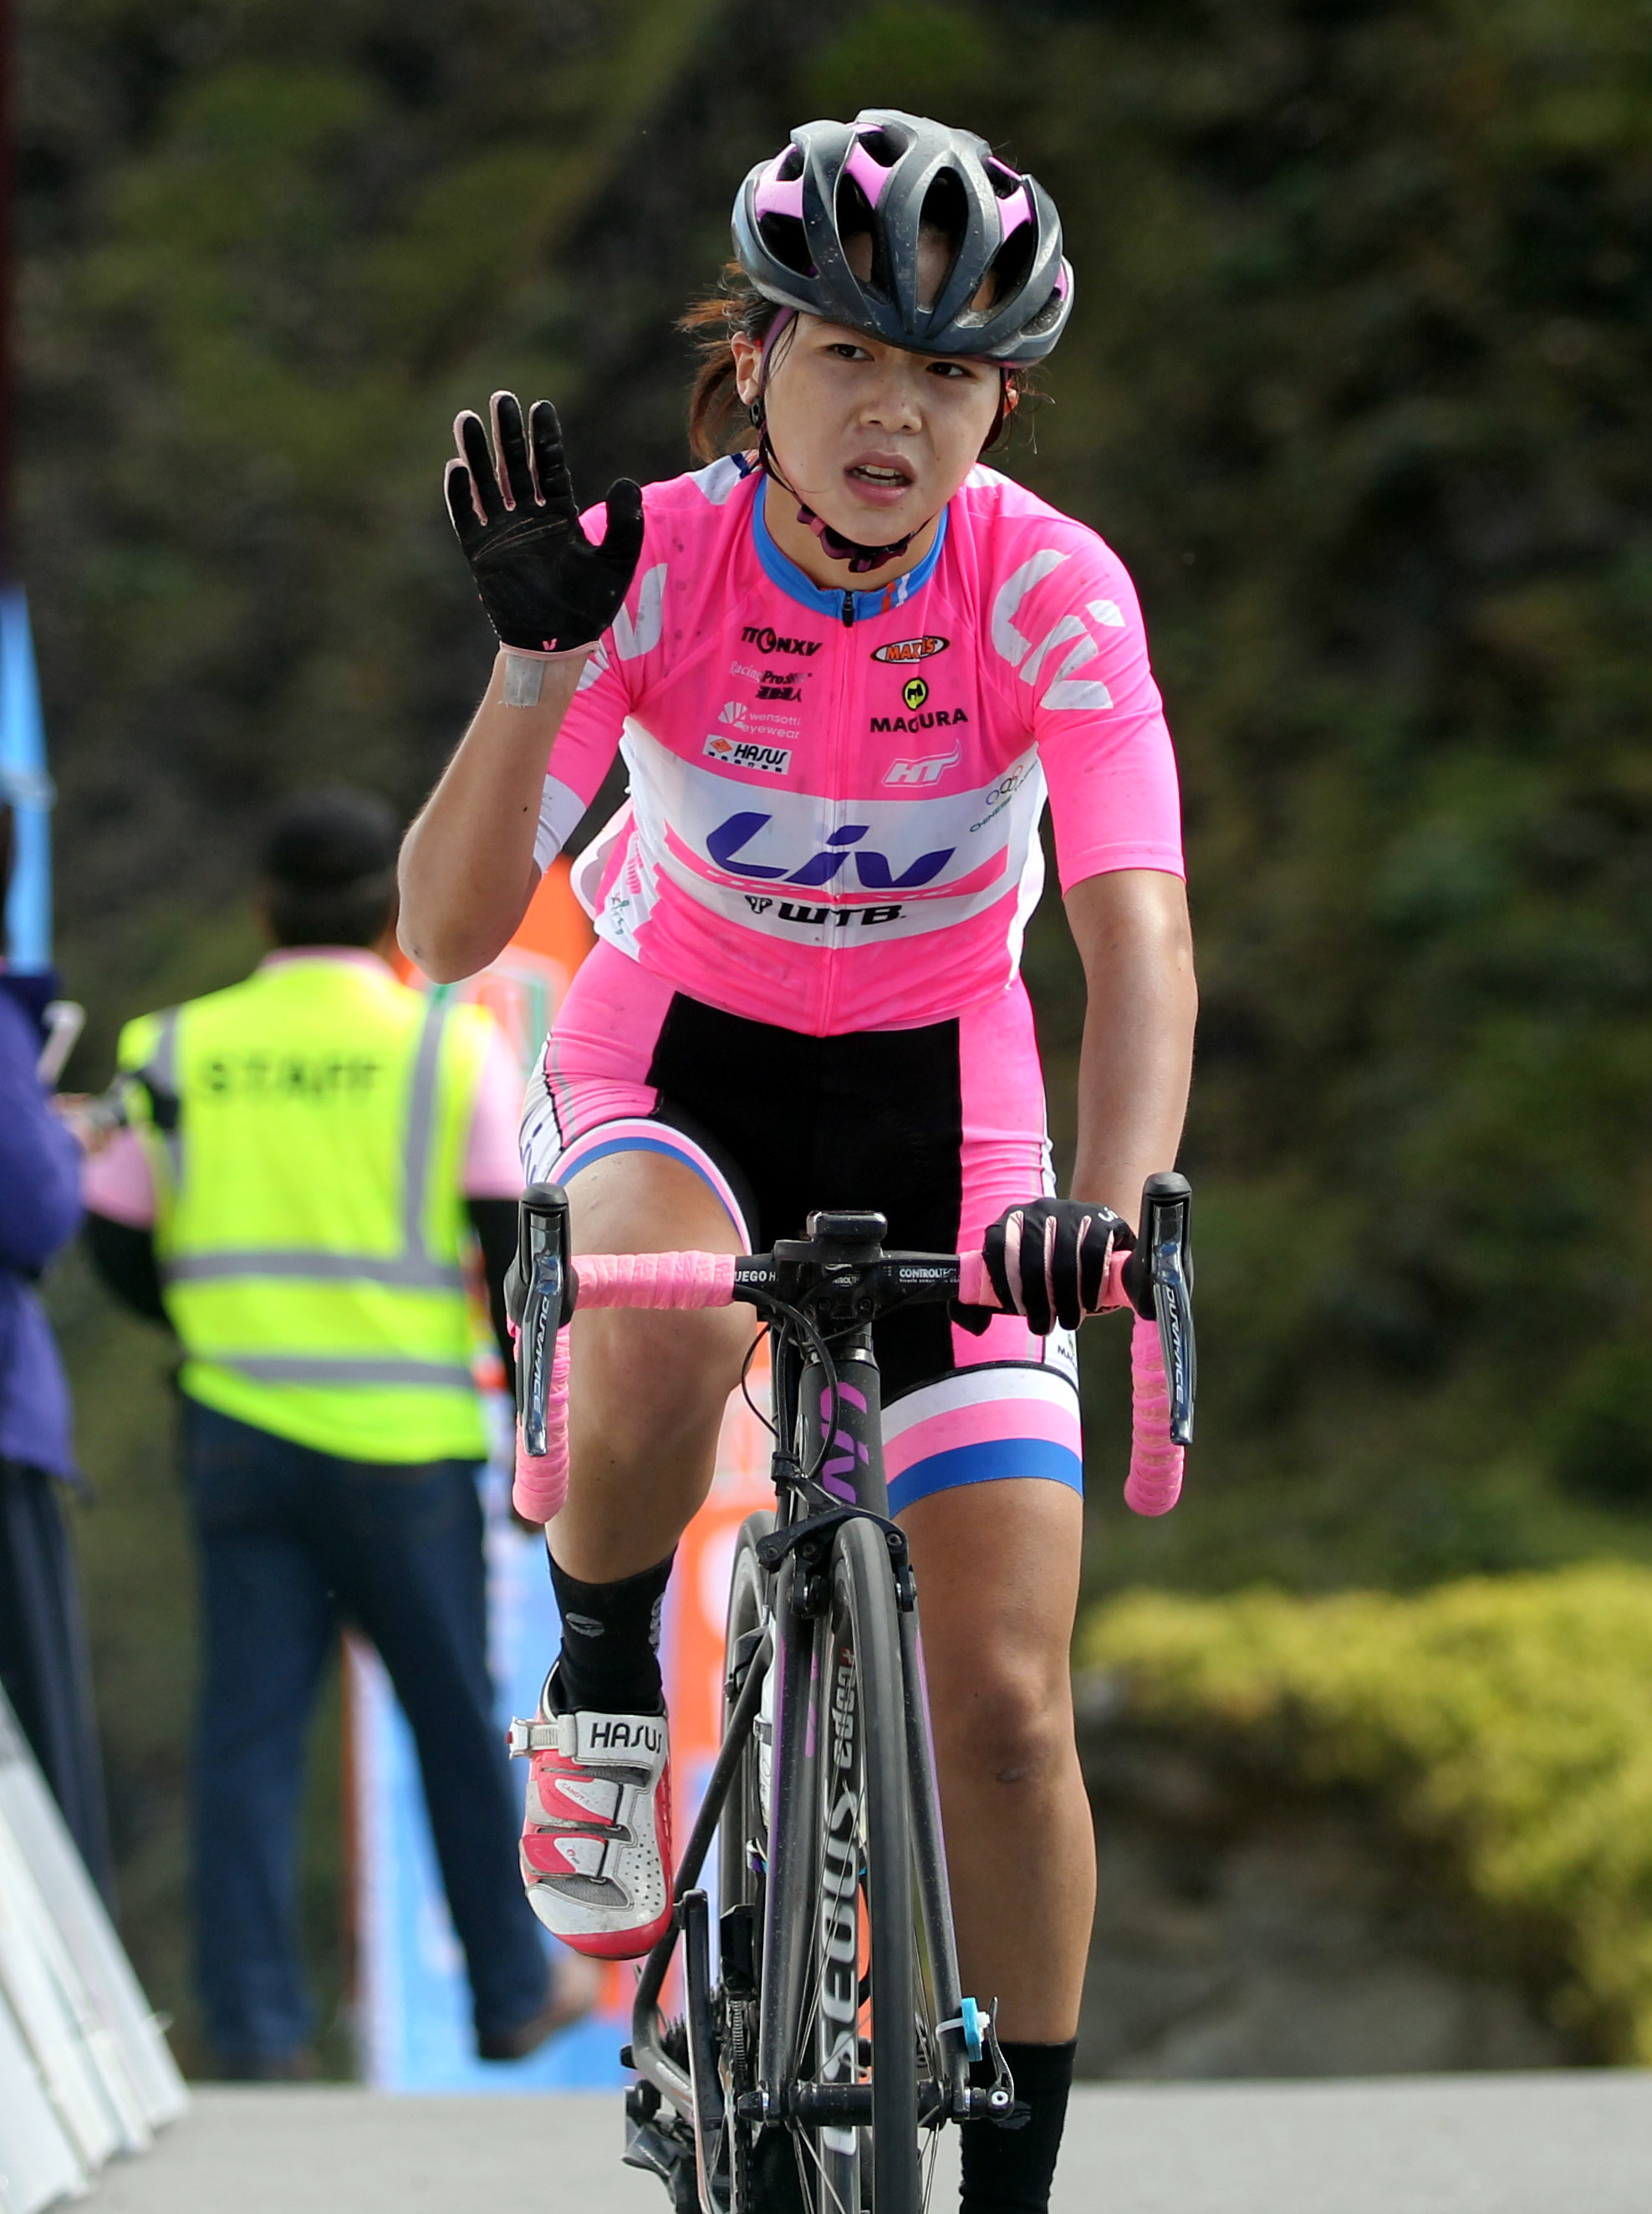 4002017臺灣自行車登山王挑戰國內女子組冠軍陳姿吟 中華民國自行車騎士協會提供